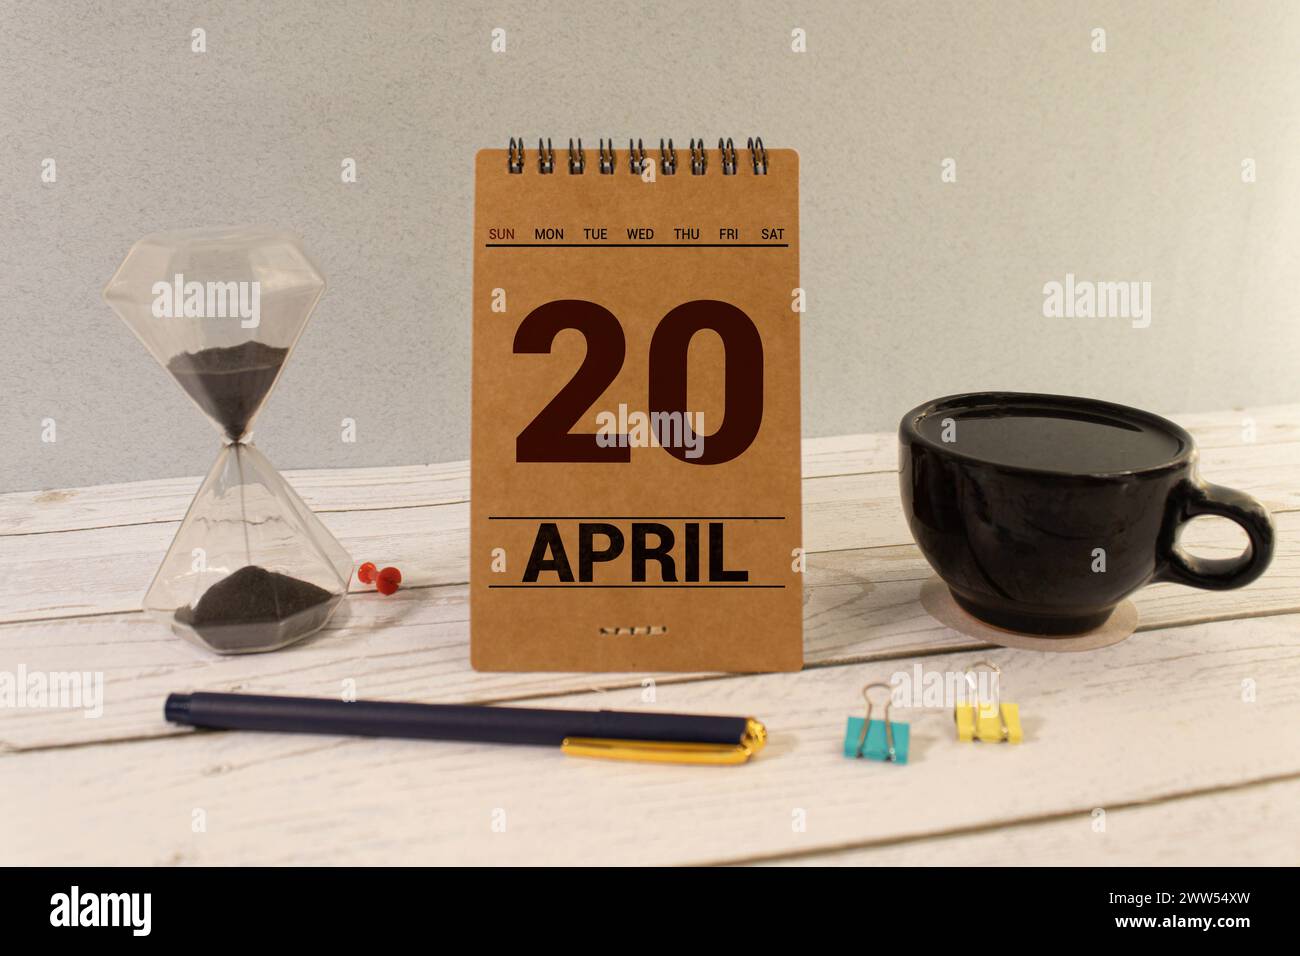 20 avril. Jour 20 du mois d'avril, calendrier sur table avec fond jaune. Heure du printemps, espace vide pour le texte Banque D'Images